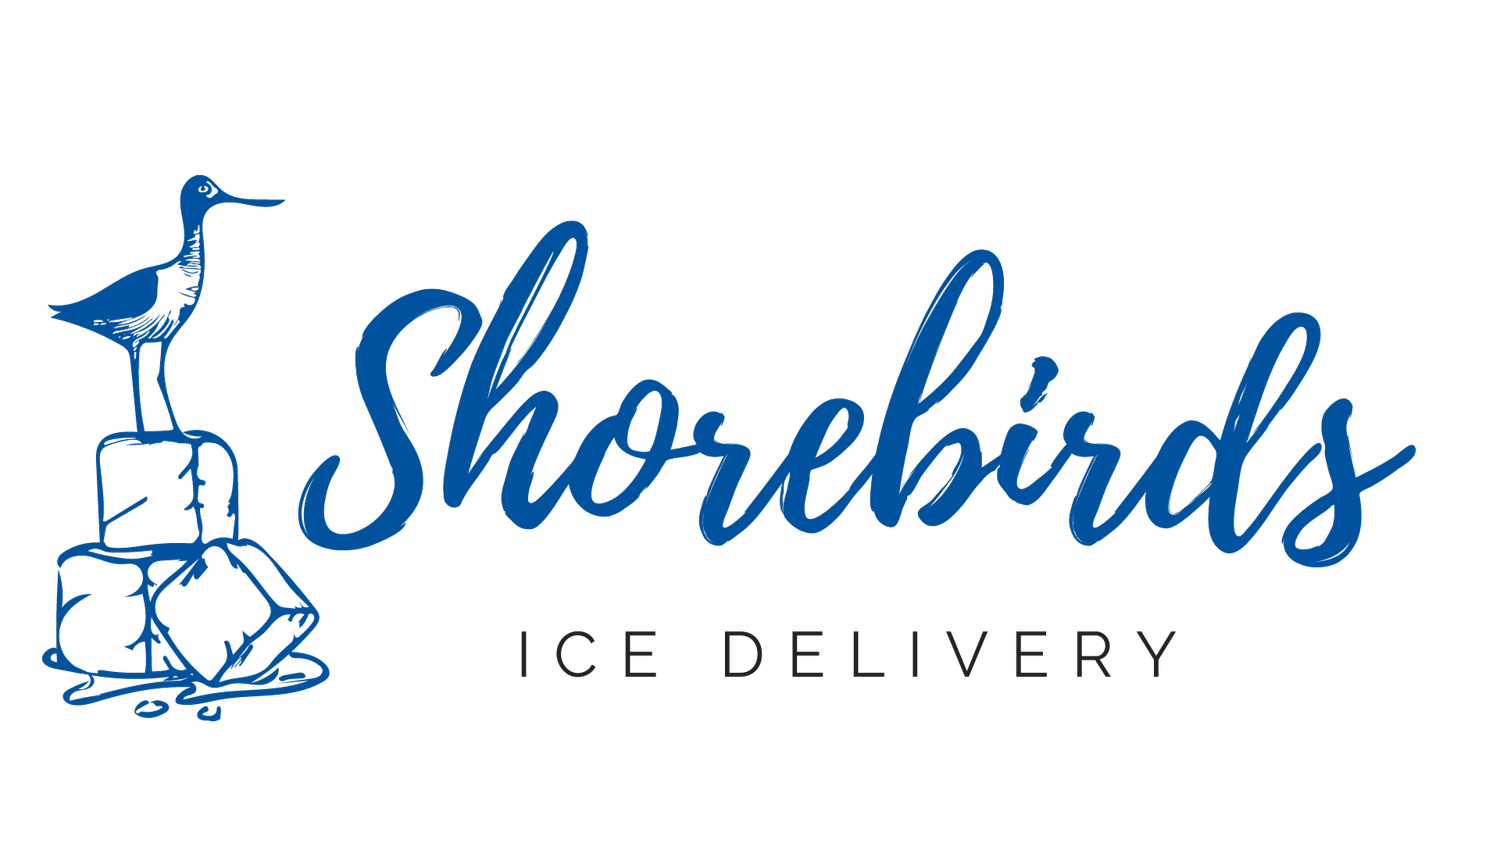 Shorebirds Ice